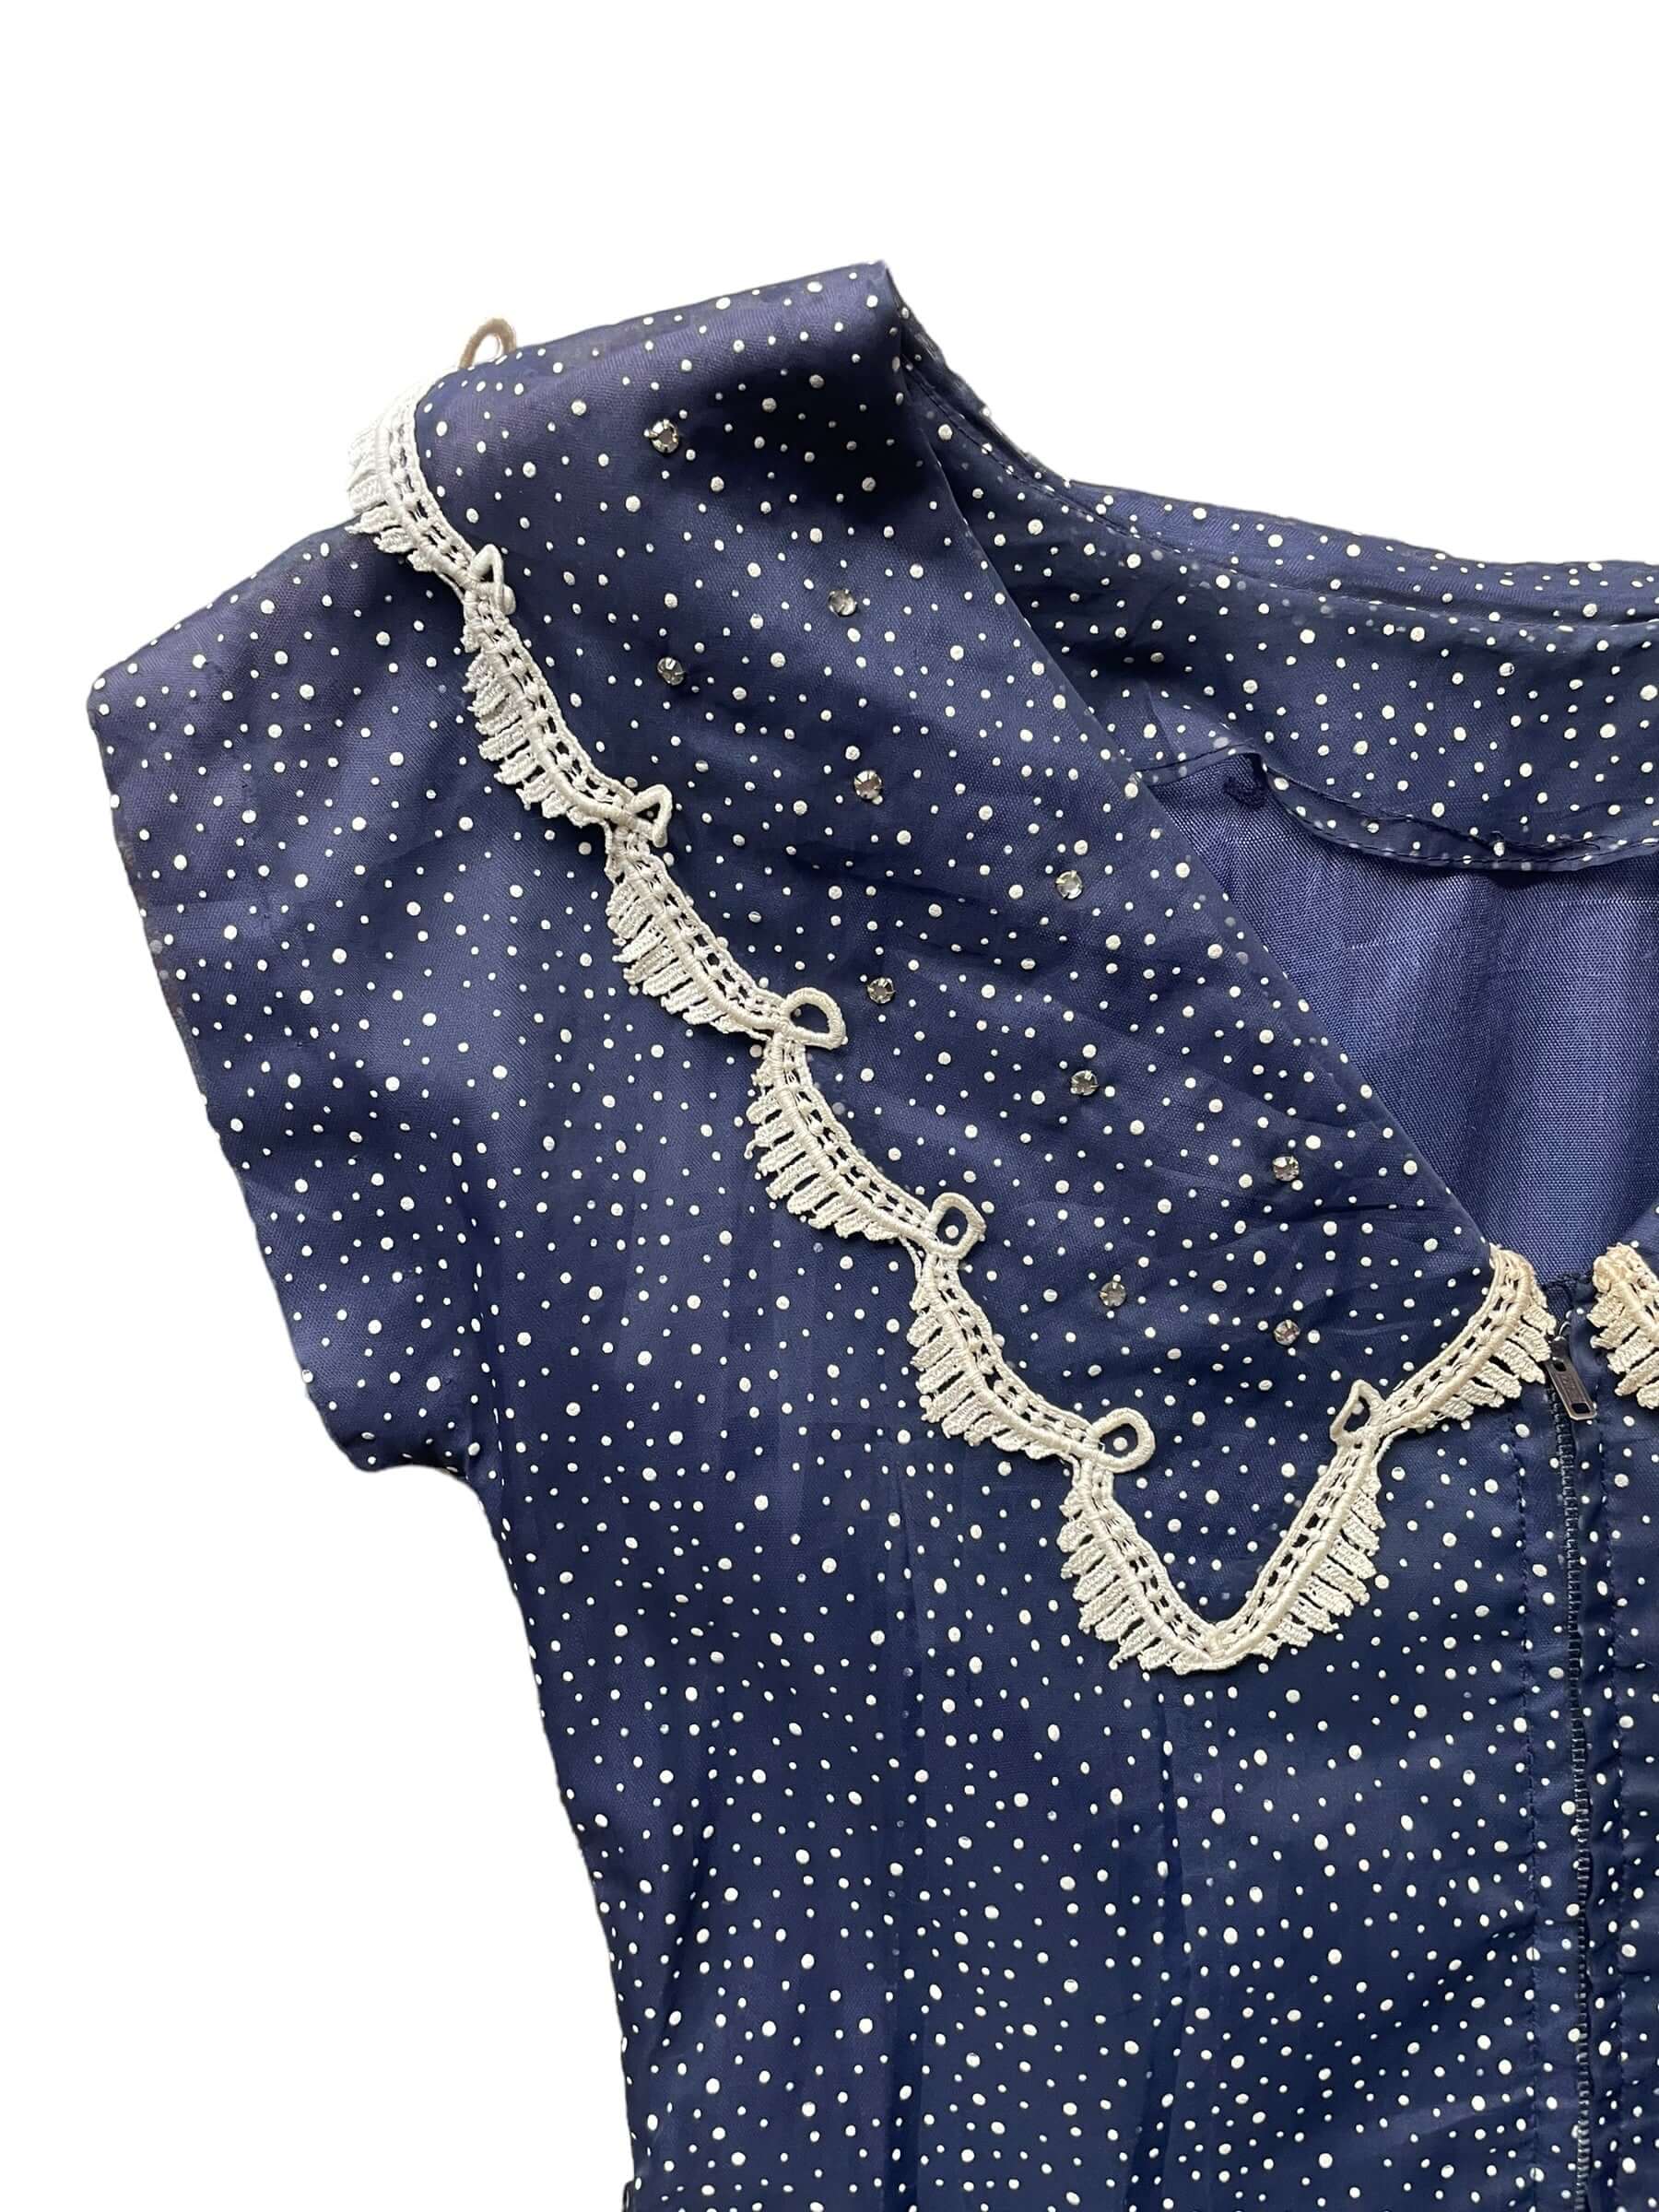 Back lwft shoulder view of Vintage 1940s Navy Blue Swiss Dot Dress |  Barn Owl Vintage Dresses | Seattle Vintage Ladies Clothing